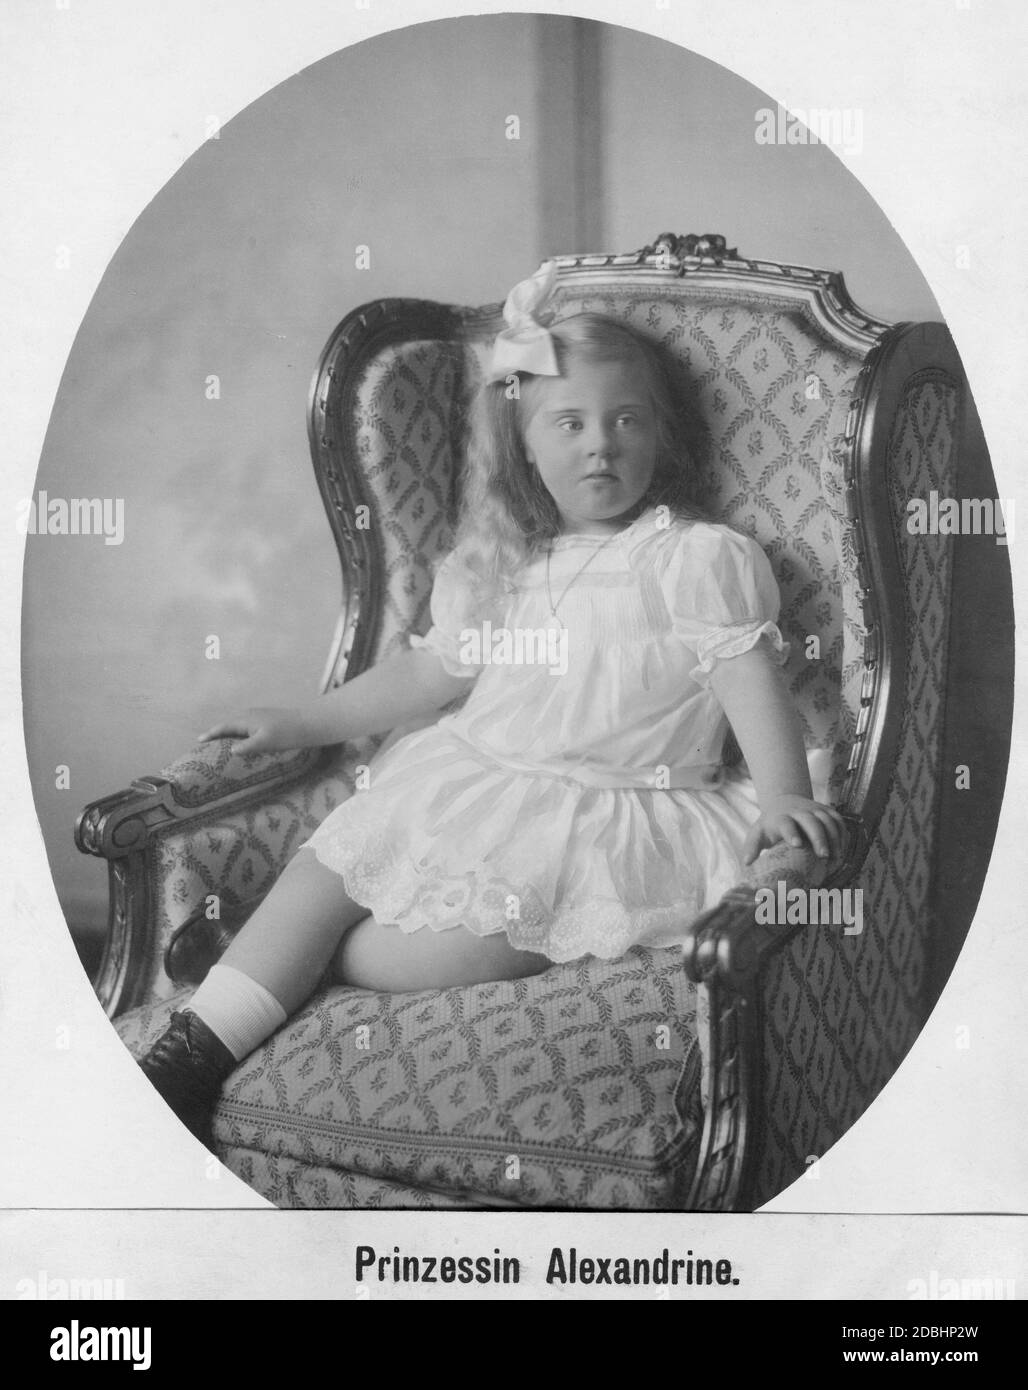 Porträt der ca. fünfjährigen Prinzessin Alexandrine Irene von Preußen, gemalt um 1920. Sie war die älteste Tochter von Cecilie von Mecklenburg. Stockfoto